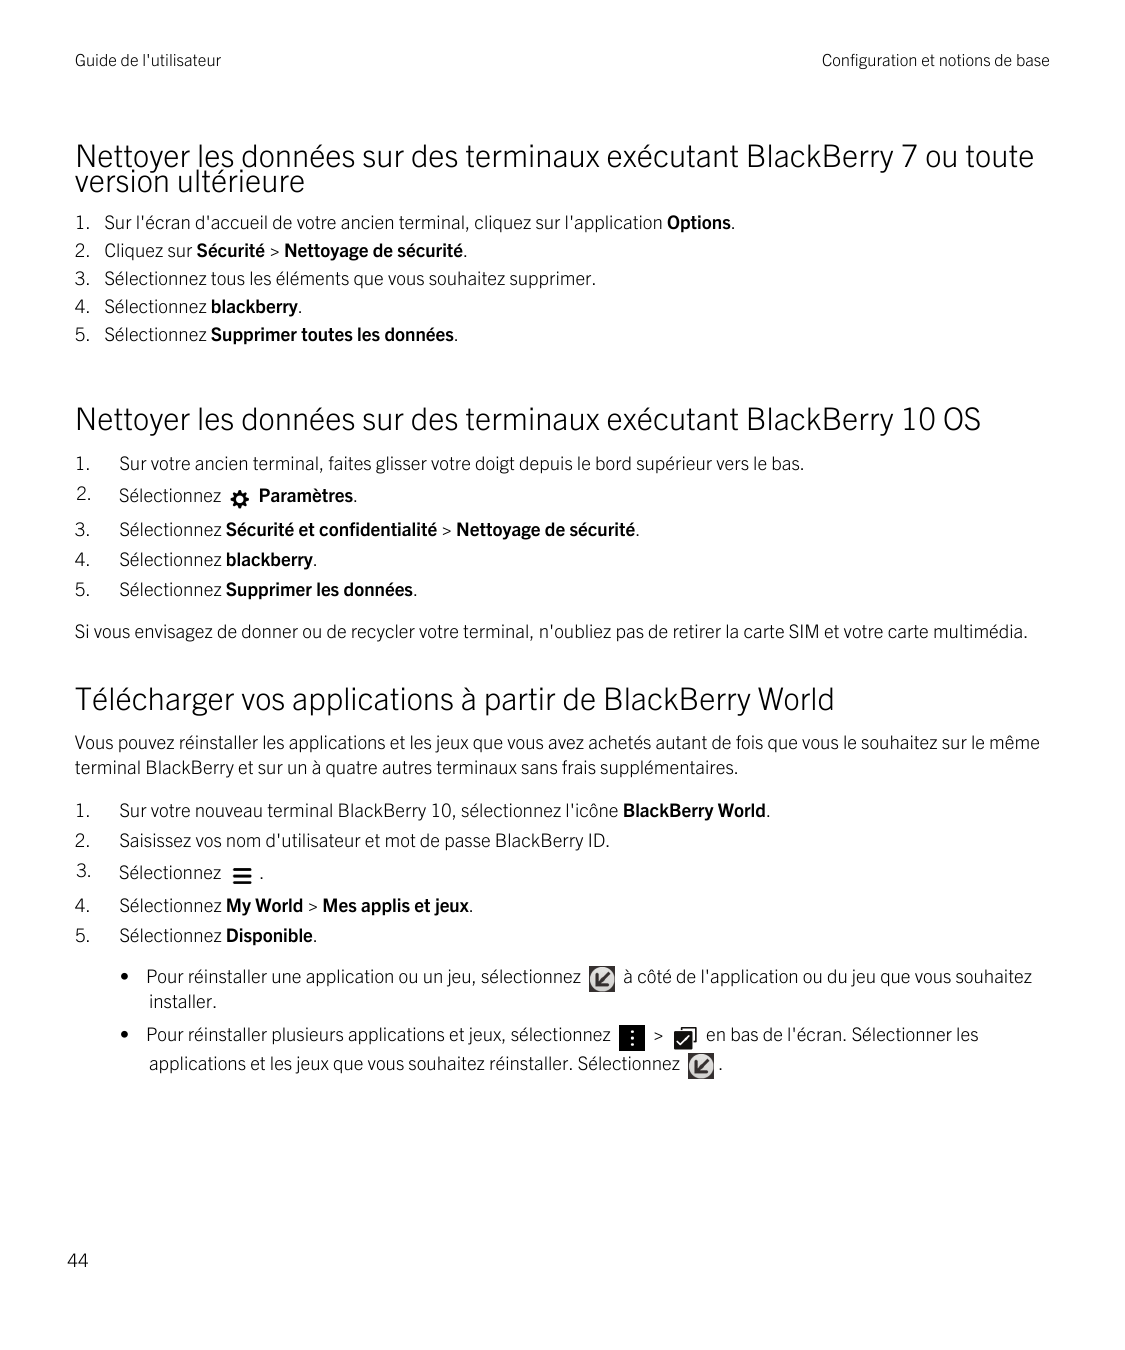 Guide de l'utilisateurConfiguration et notions de baseNettoyer les données sur des terminaux exécutant BlackBerry 7 ou toutevers